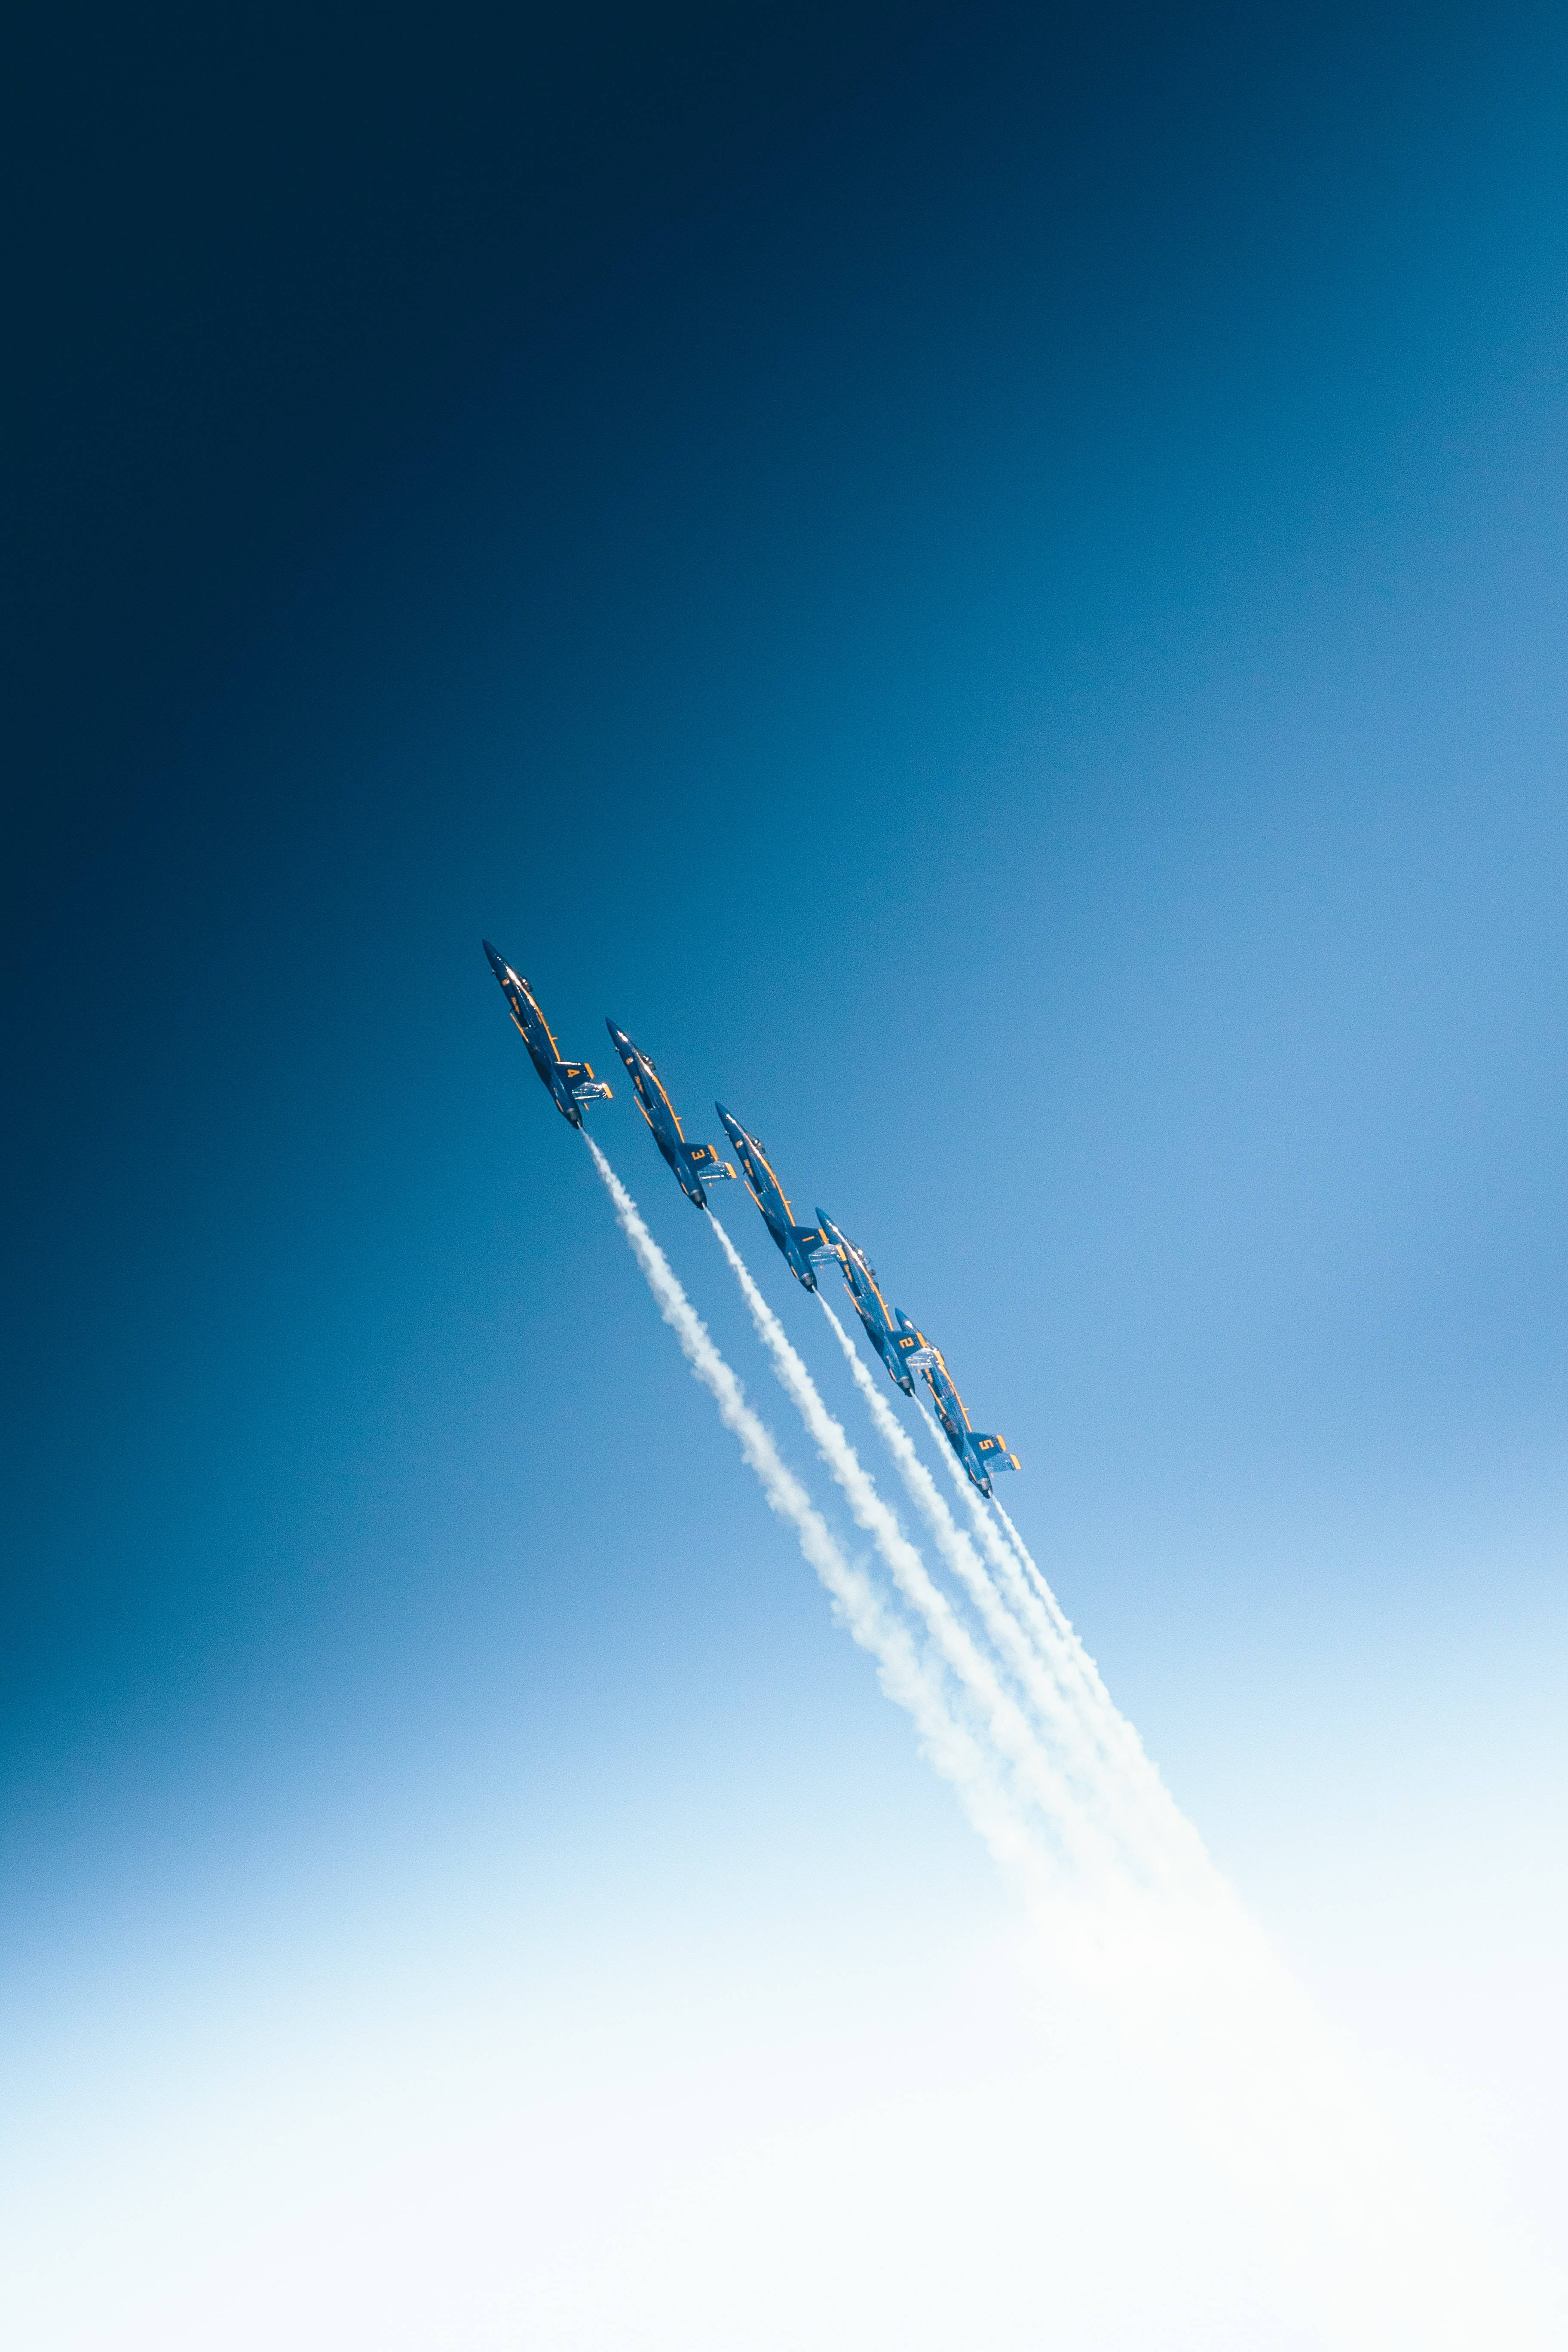 4kultra Hd Handy Jet Flugzeuge Blauer Himmel Wallpaper